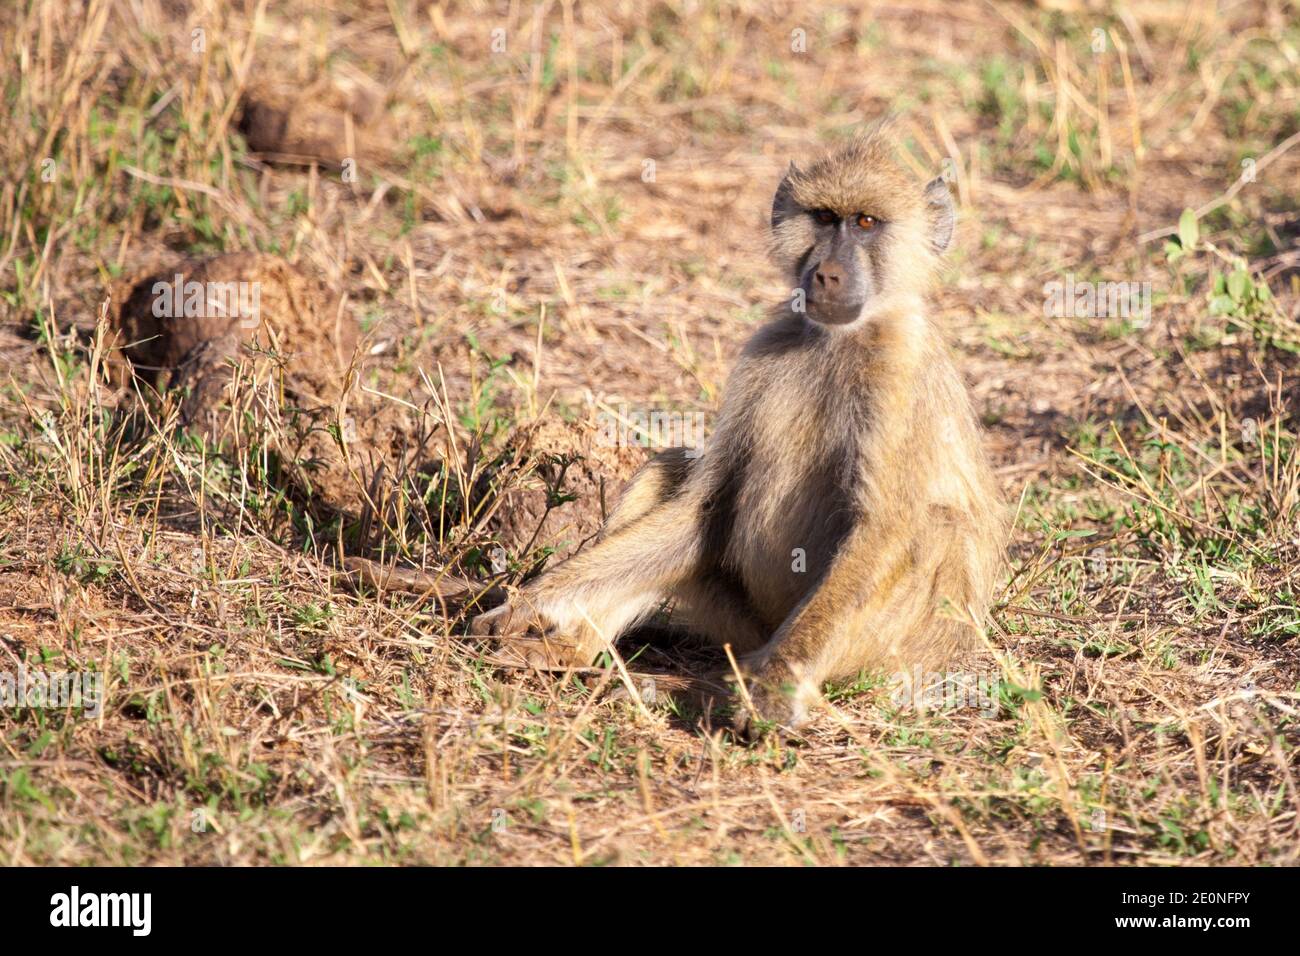 Monkey sitting, scenery of Kenya. Stock Photo